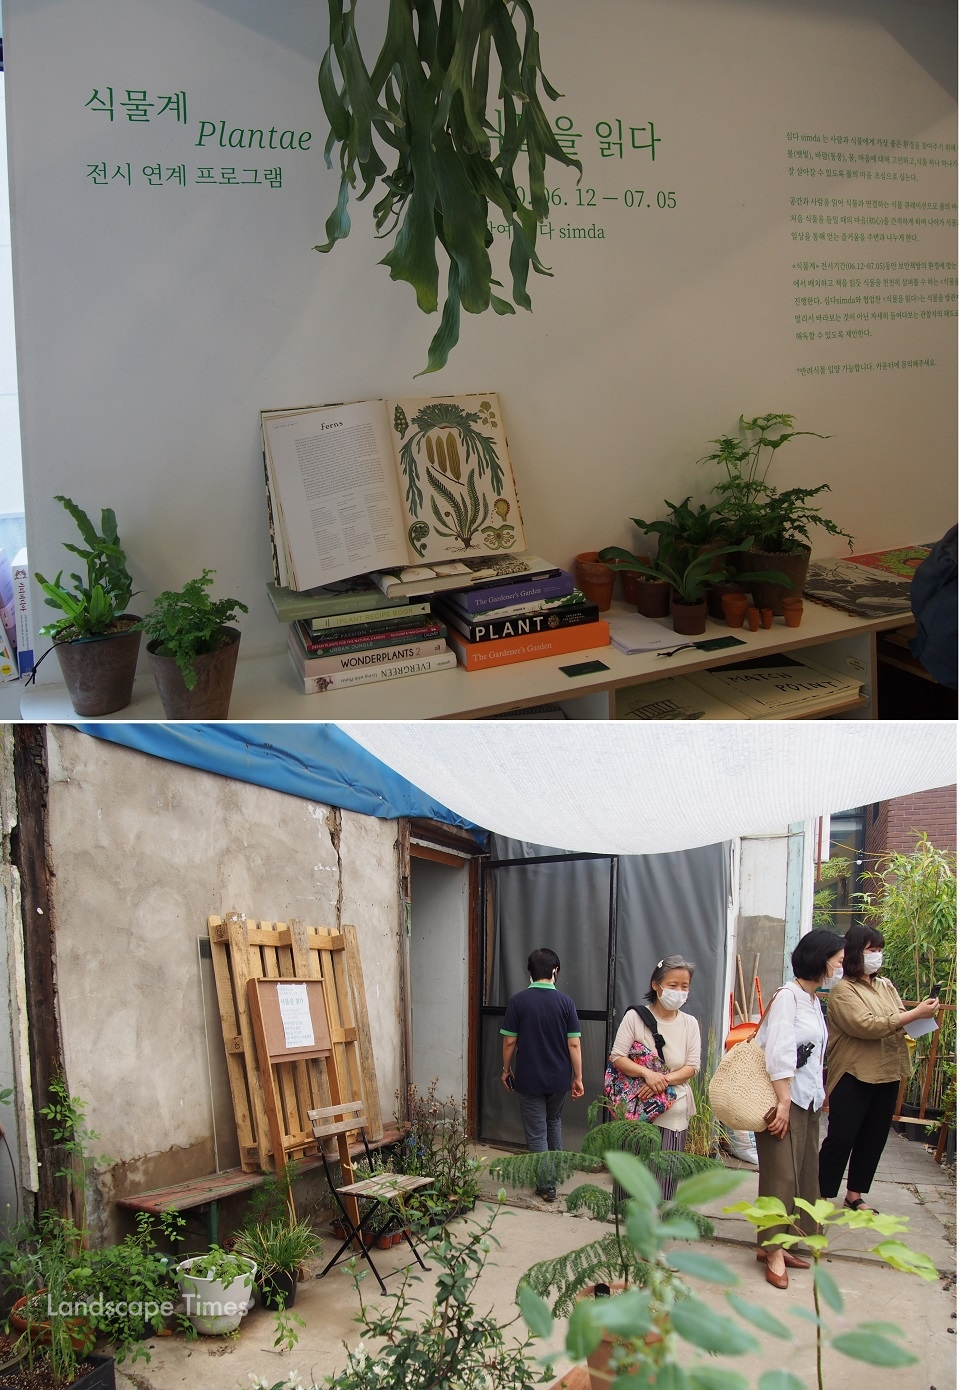 전시연계프로그램 ‘식물을 읽다’. 전시장 뒷마당과 2층 보안책방에는 심다(simda)가 큐레이션한 정원을 볼 수 있다.